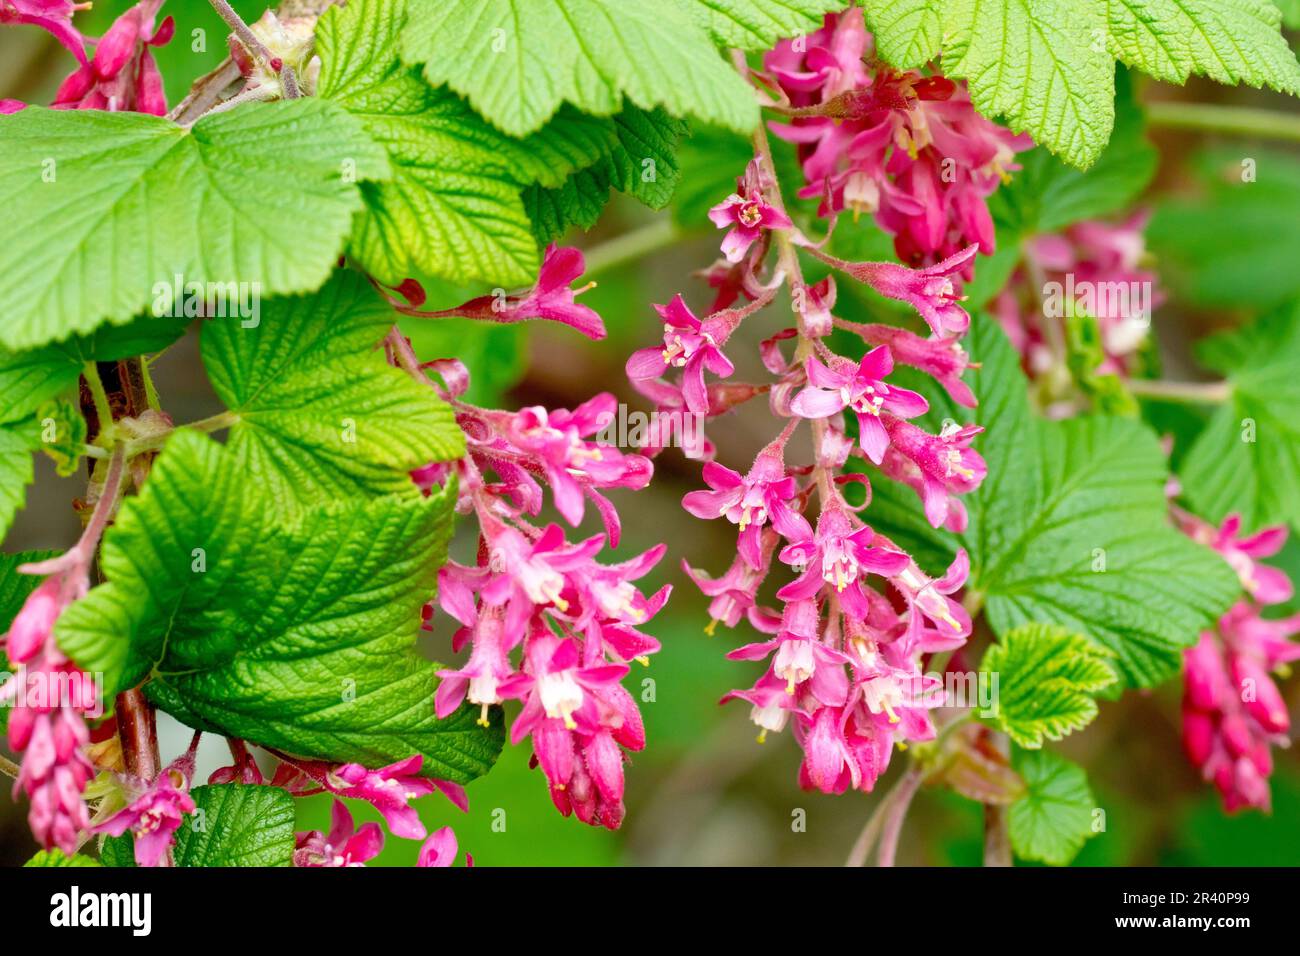 Ribes in fiore (ribes sanguineum), primo piano dei fiori rosa pendenti dell'arbusto, comunemente piantati in giardini, ma anche trovato selvaggio come fuga Foto Stock